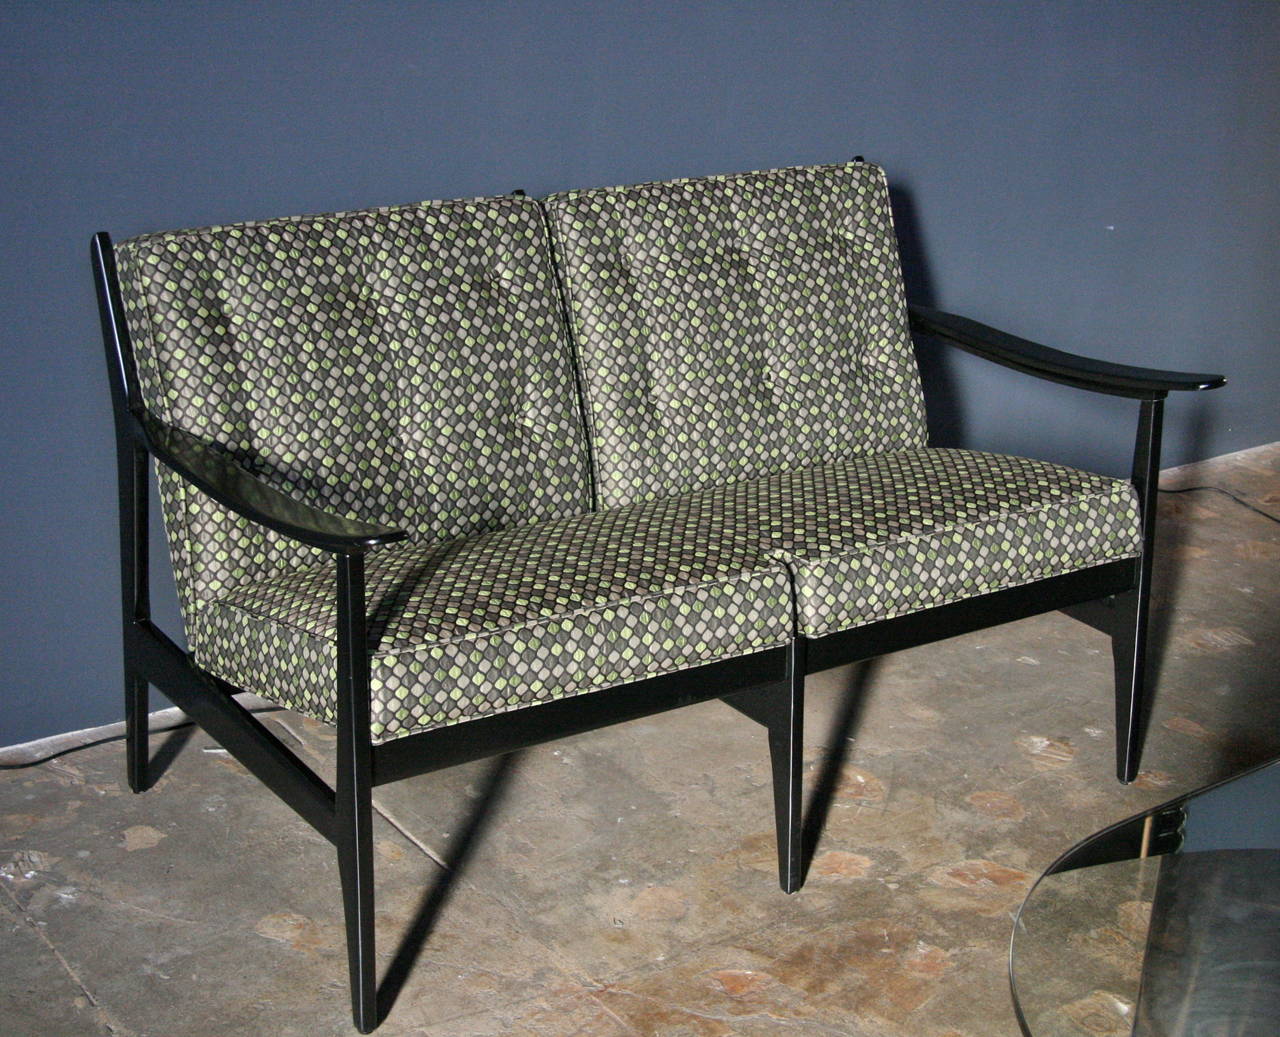 GF für Cassina ... ja! Das elegante, gefütterte Sofa bietet das Beste des italienischen Designs der 1950er Jahre. Setzen Sie sich.